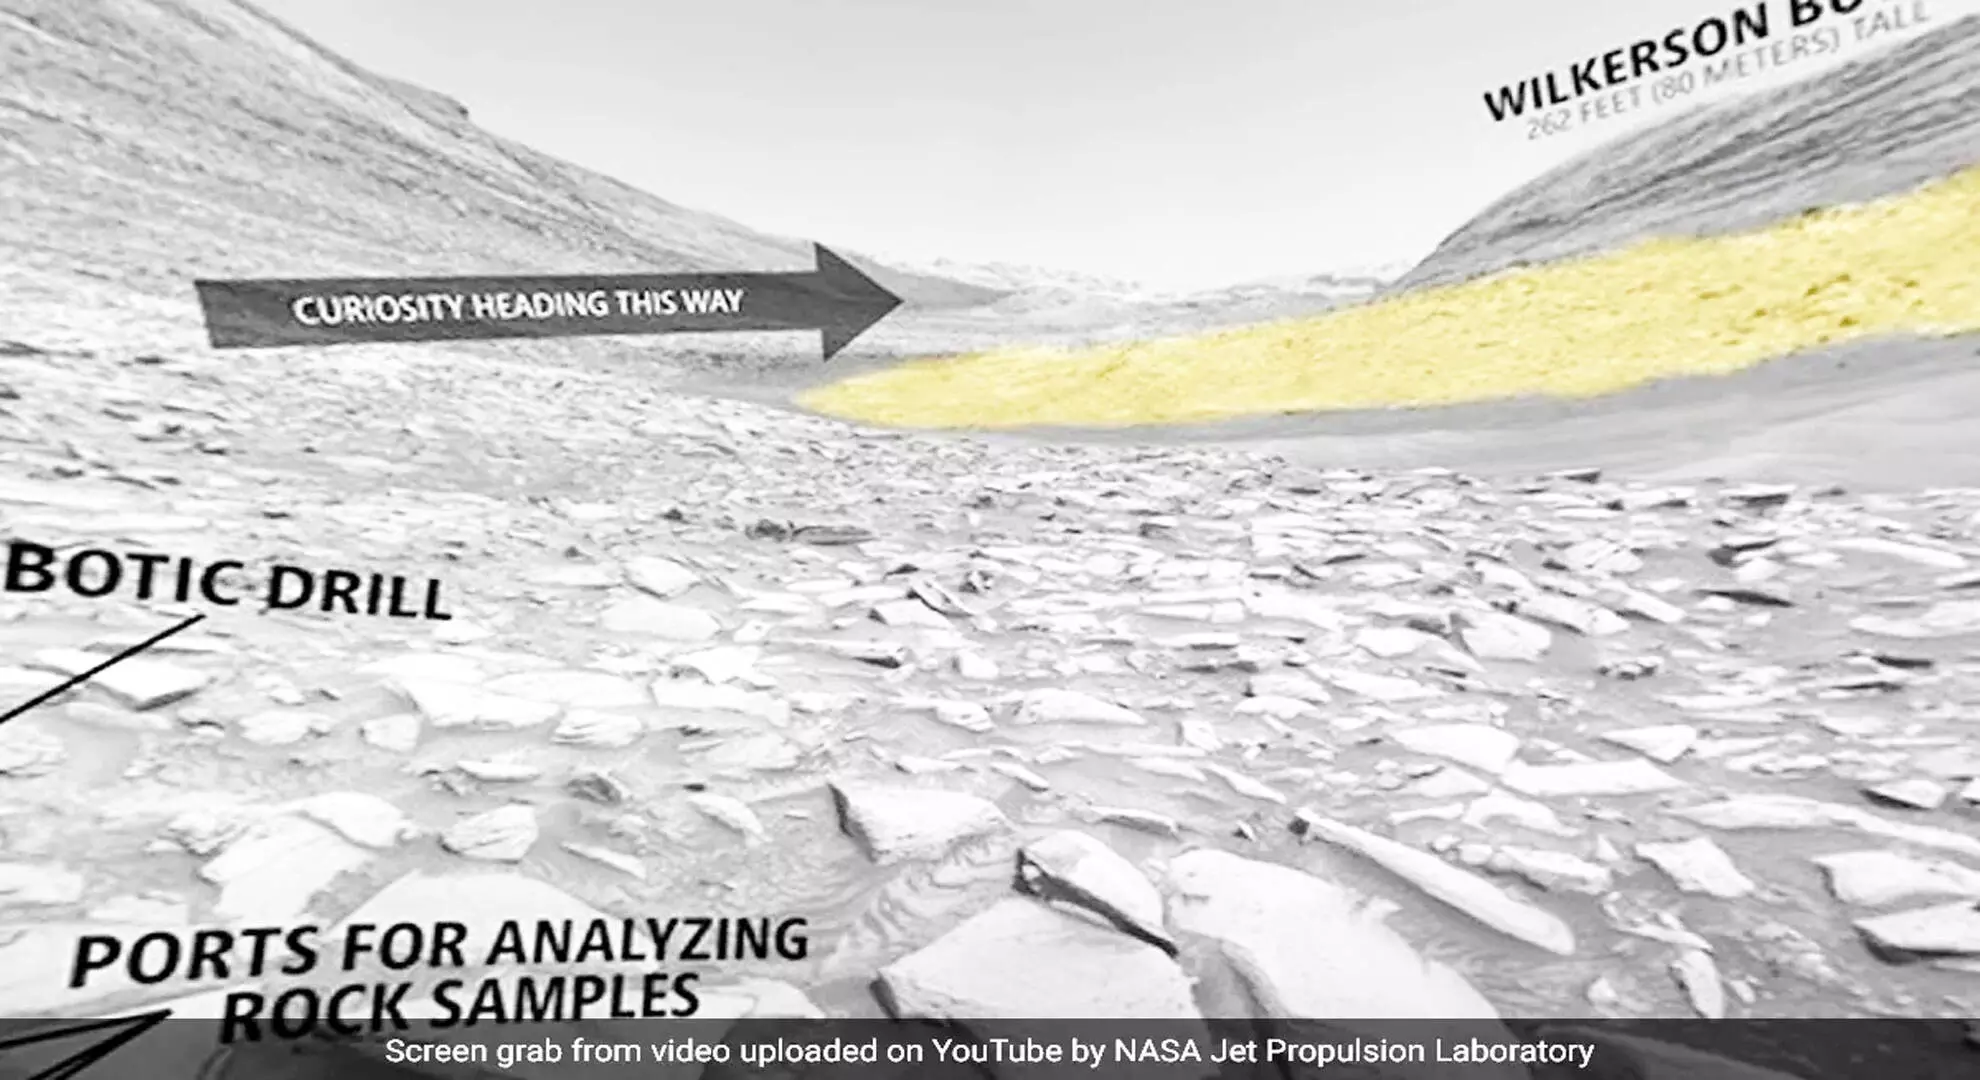 नासा क्यूरियोसिटी रोवर के सौजन्य से मंगल ग्रह के गेडिज़ वालिस चैनल का 360 डिग्री दृश्य